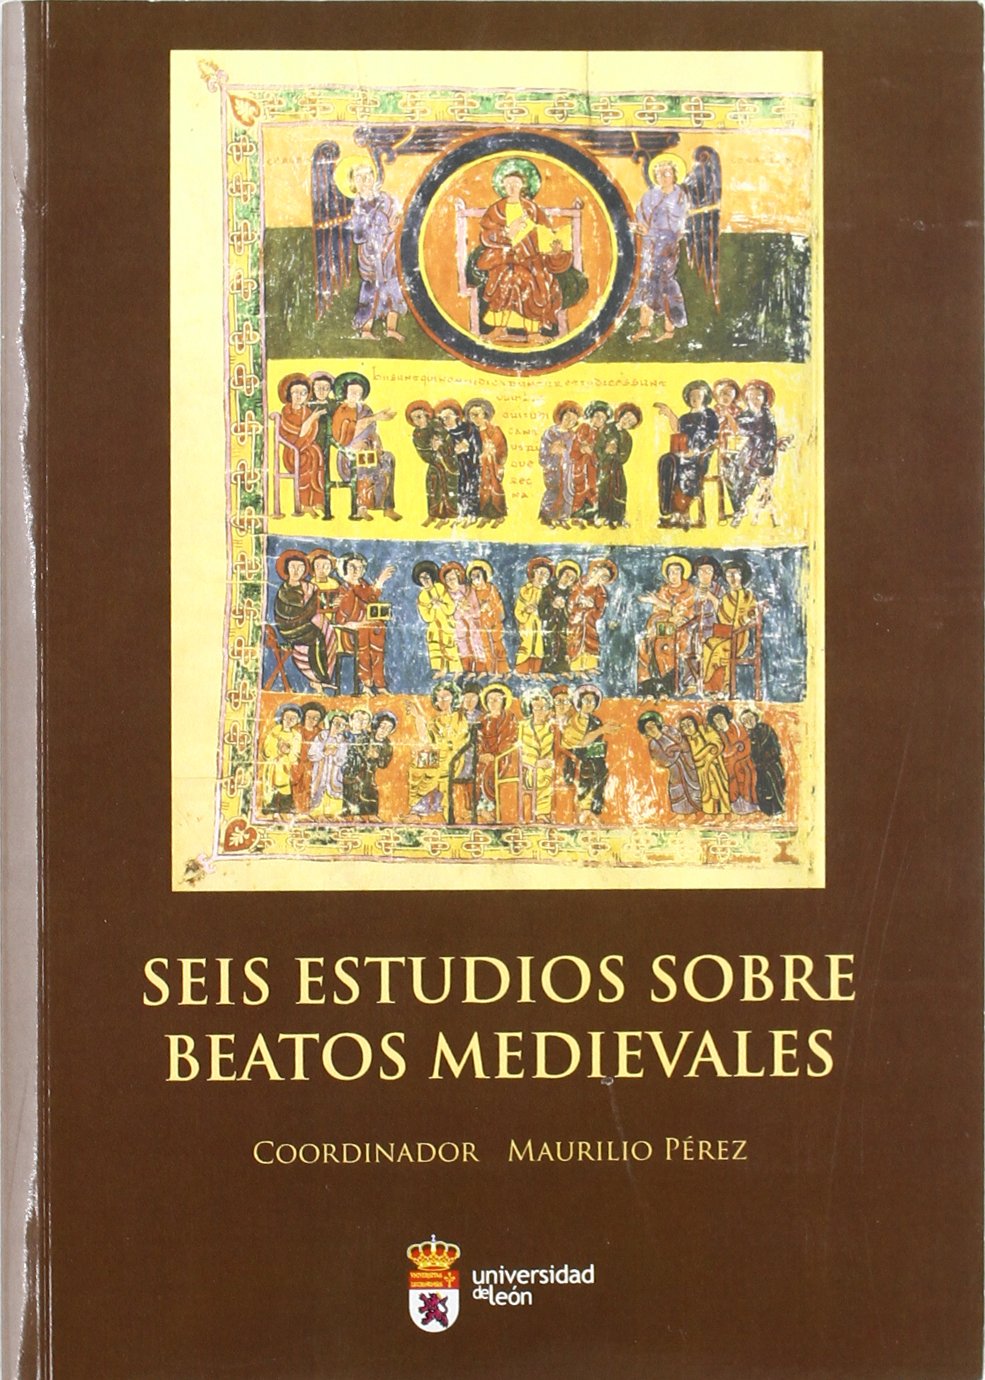 Imagen de portada del libro Seis estudios sobre beatos medievales